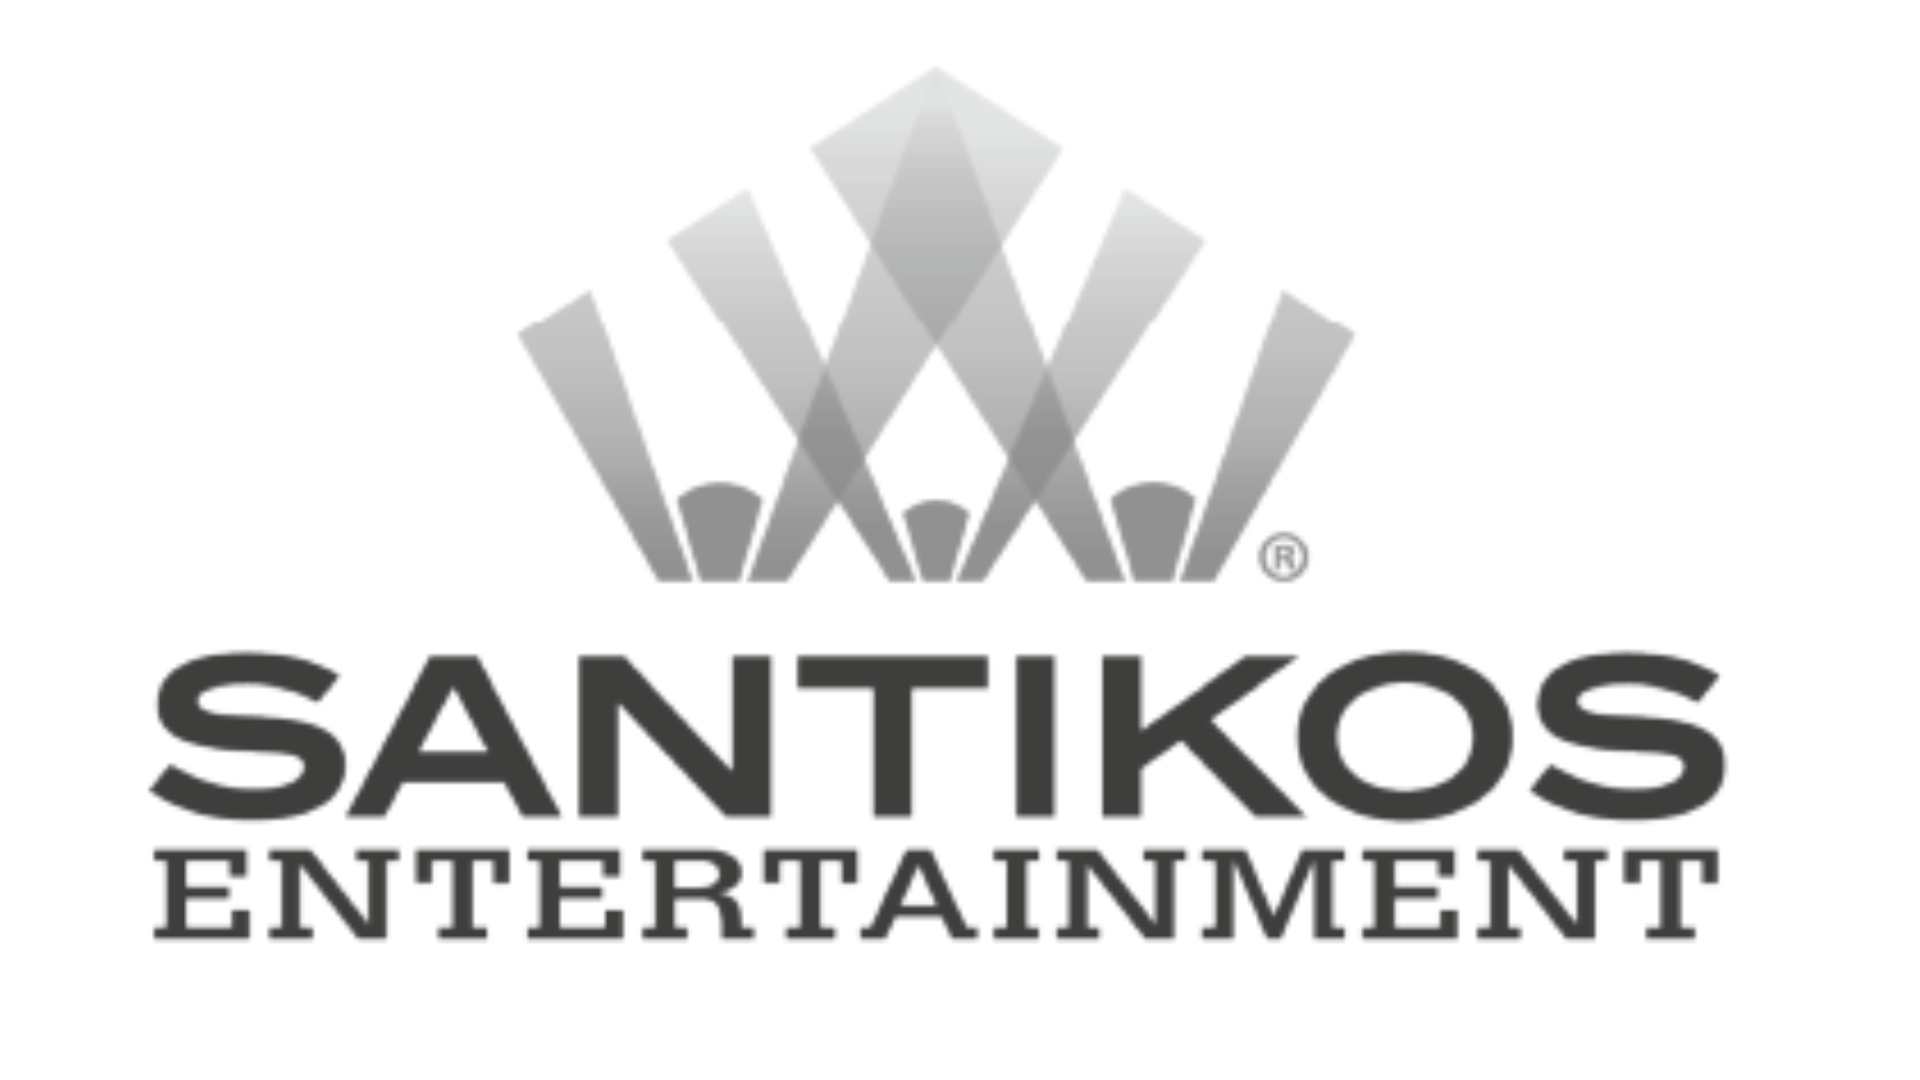 Santikos_entertainment_logo